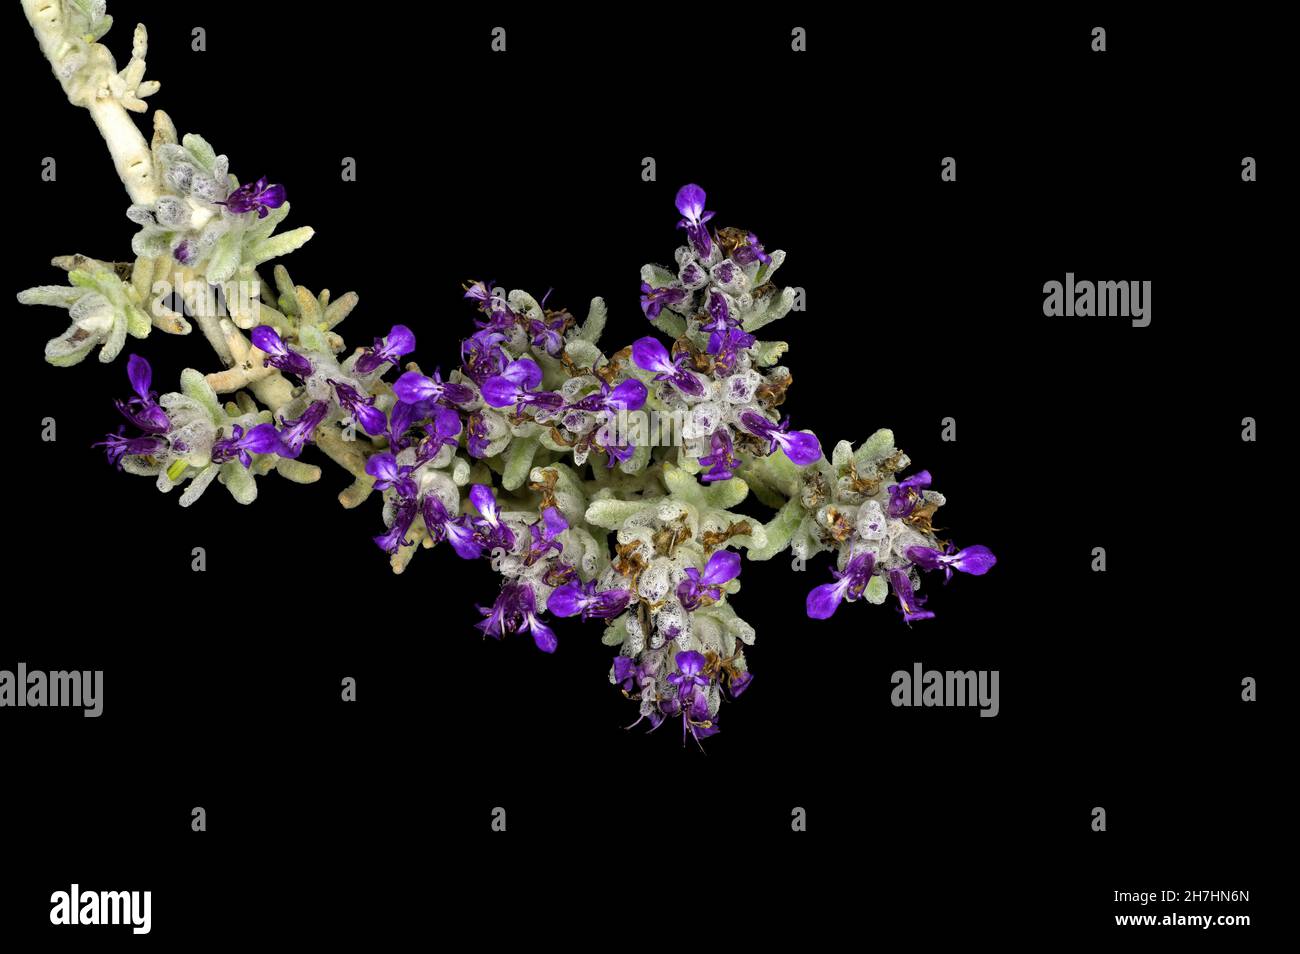 sedum sediforme, planta de piedra pálida, con flores azules, violetas y púrpura sobre fondo negro Foto de stock